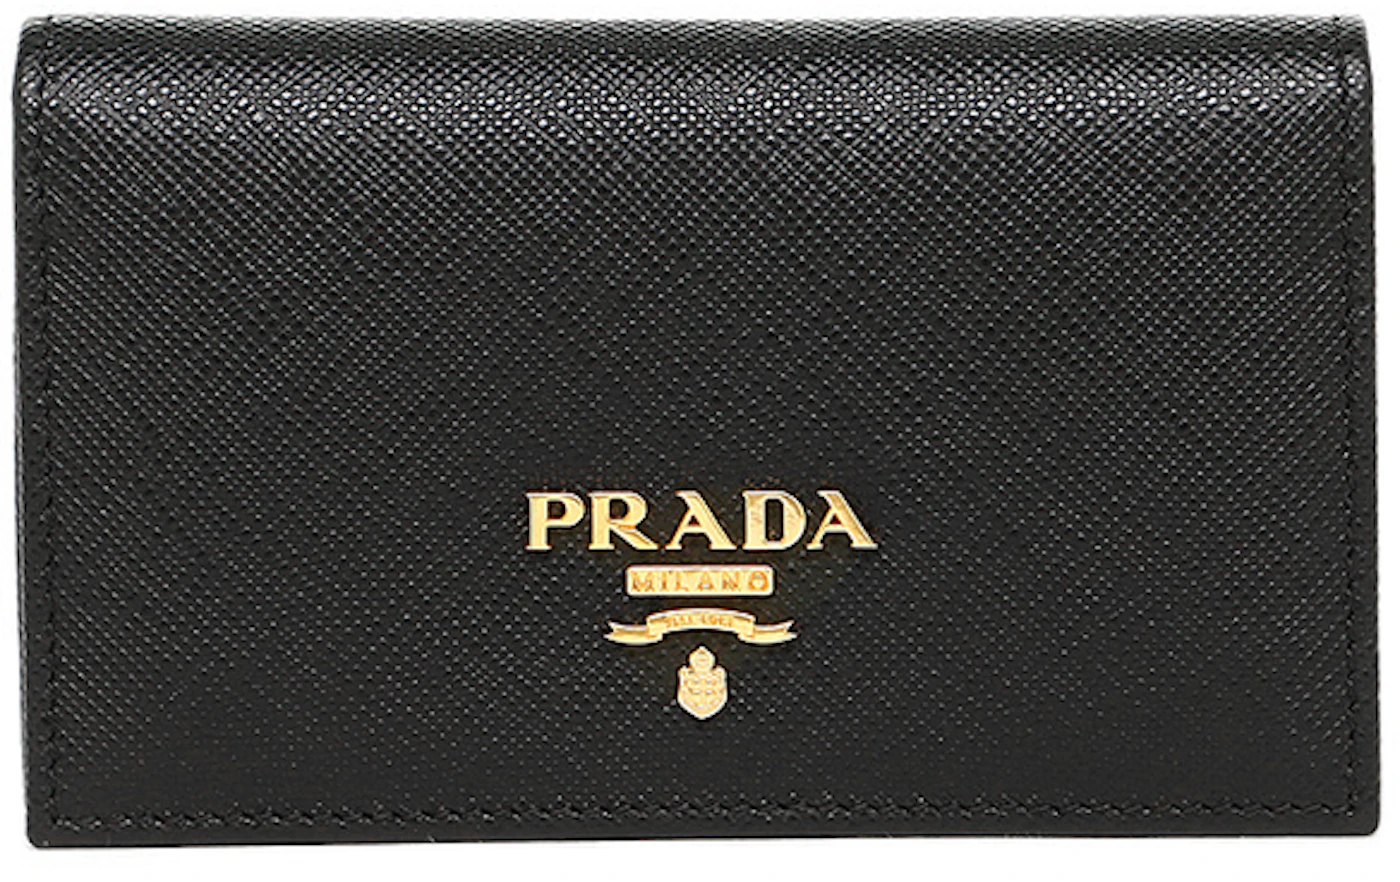 Prada Card Case Saffiano Leather Nero in Saffiano Leather with Gold ...